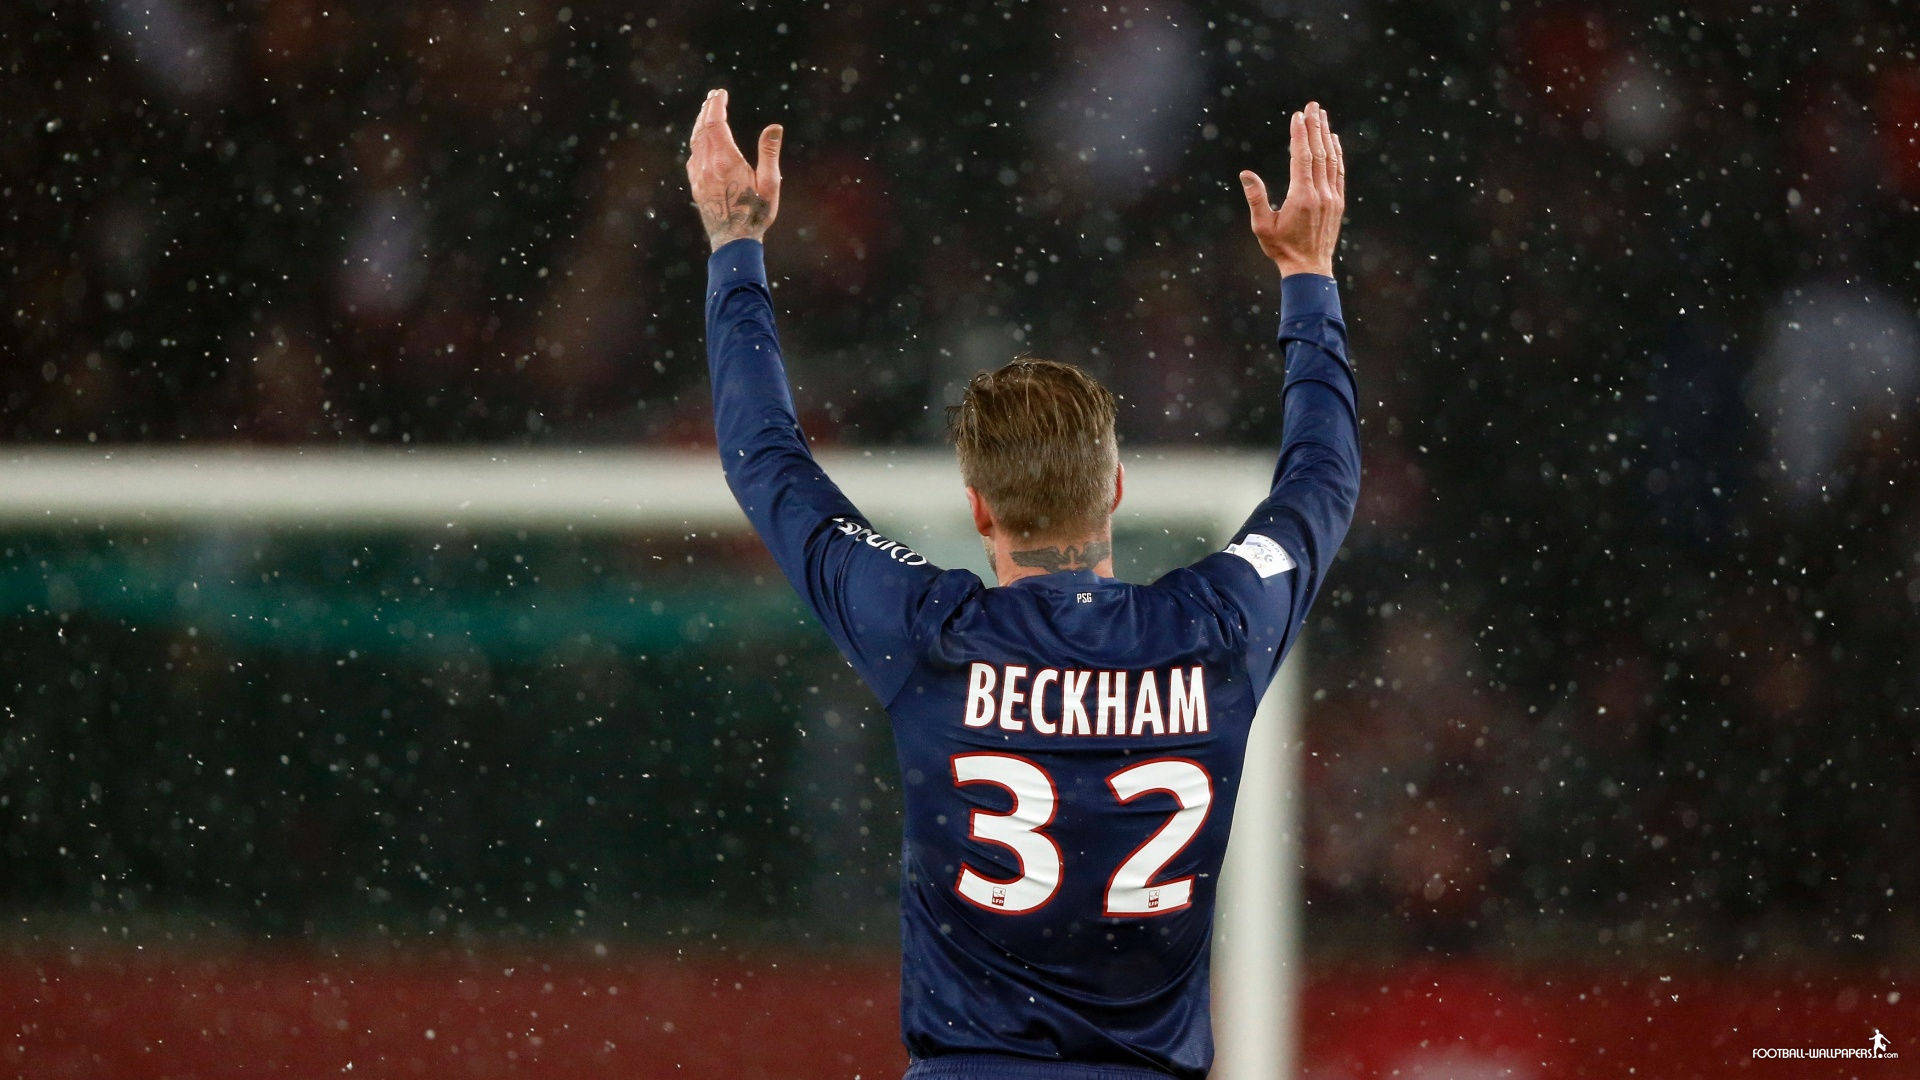 David Beckham Playing For F.c. Paris Saint-germain Background